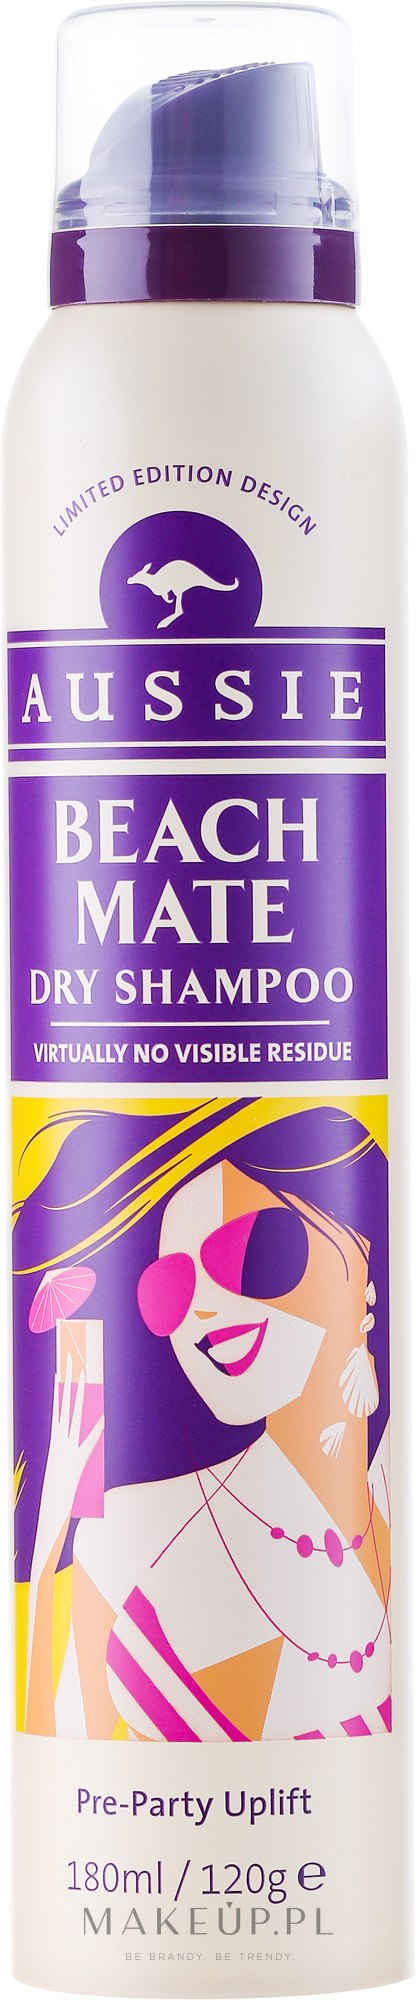 suchy szampon beach mate opinie